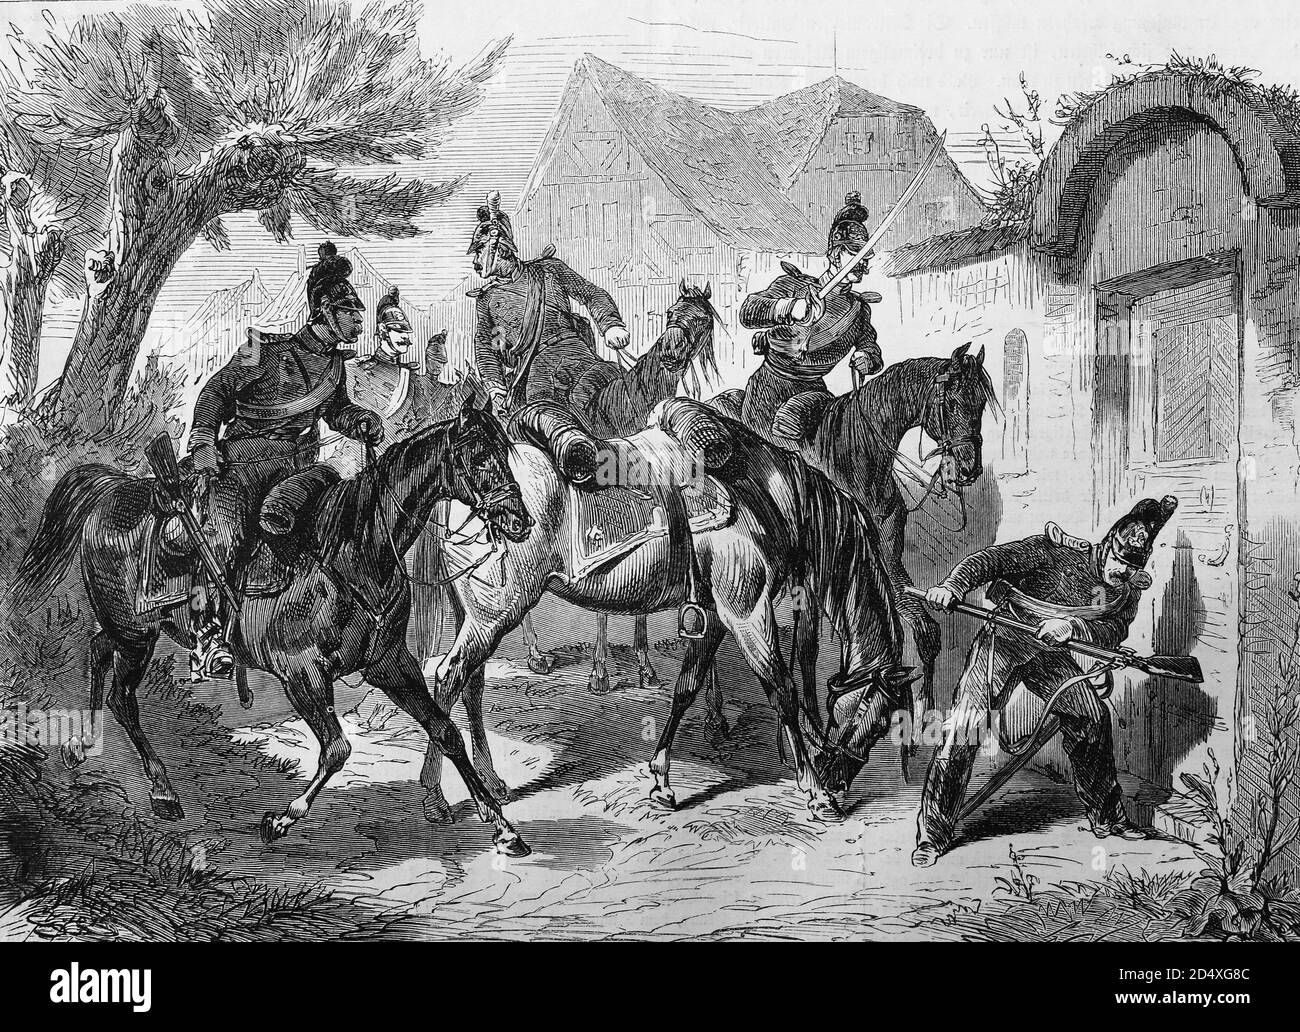 Bayerische leichte Kavallerie auf Patrouille, illustrierte Kriegsgeschichte, Deutsch - Französischer Krieg 1870-1871 Stockfoto